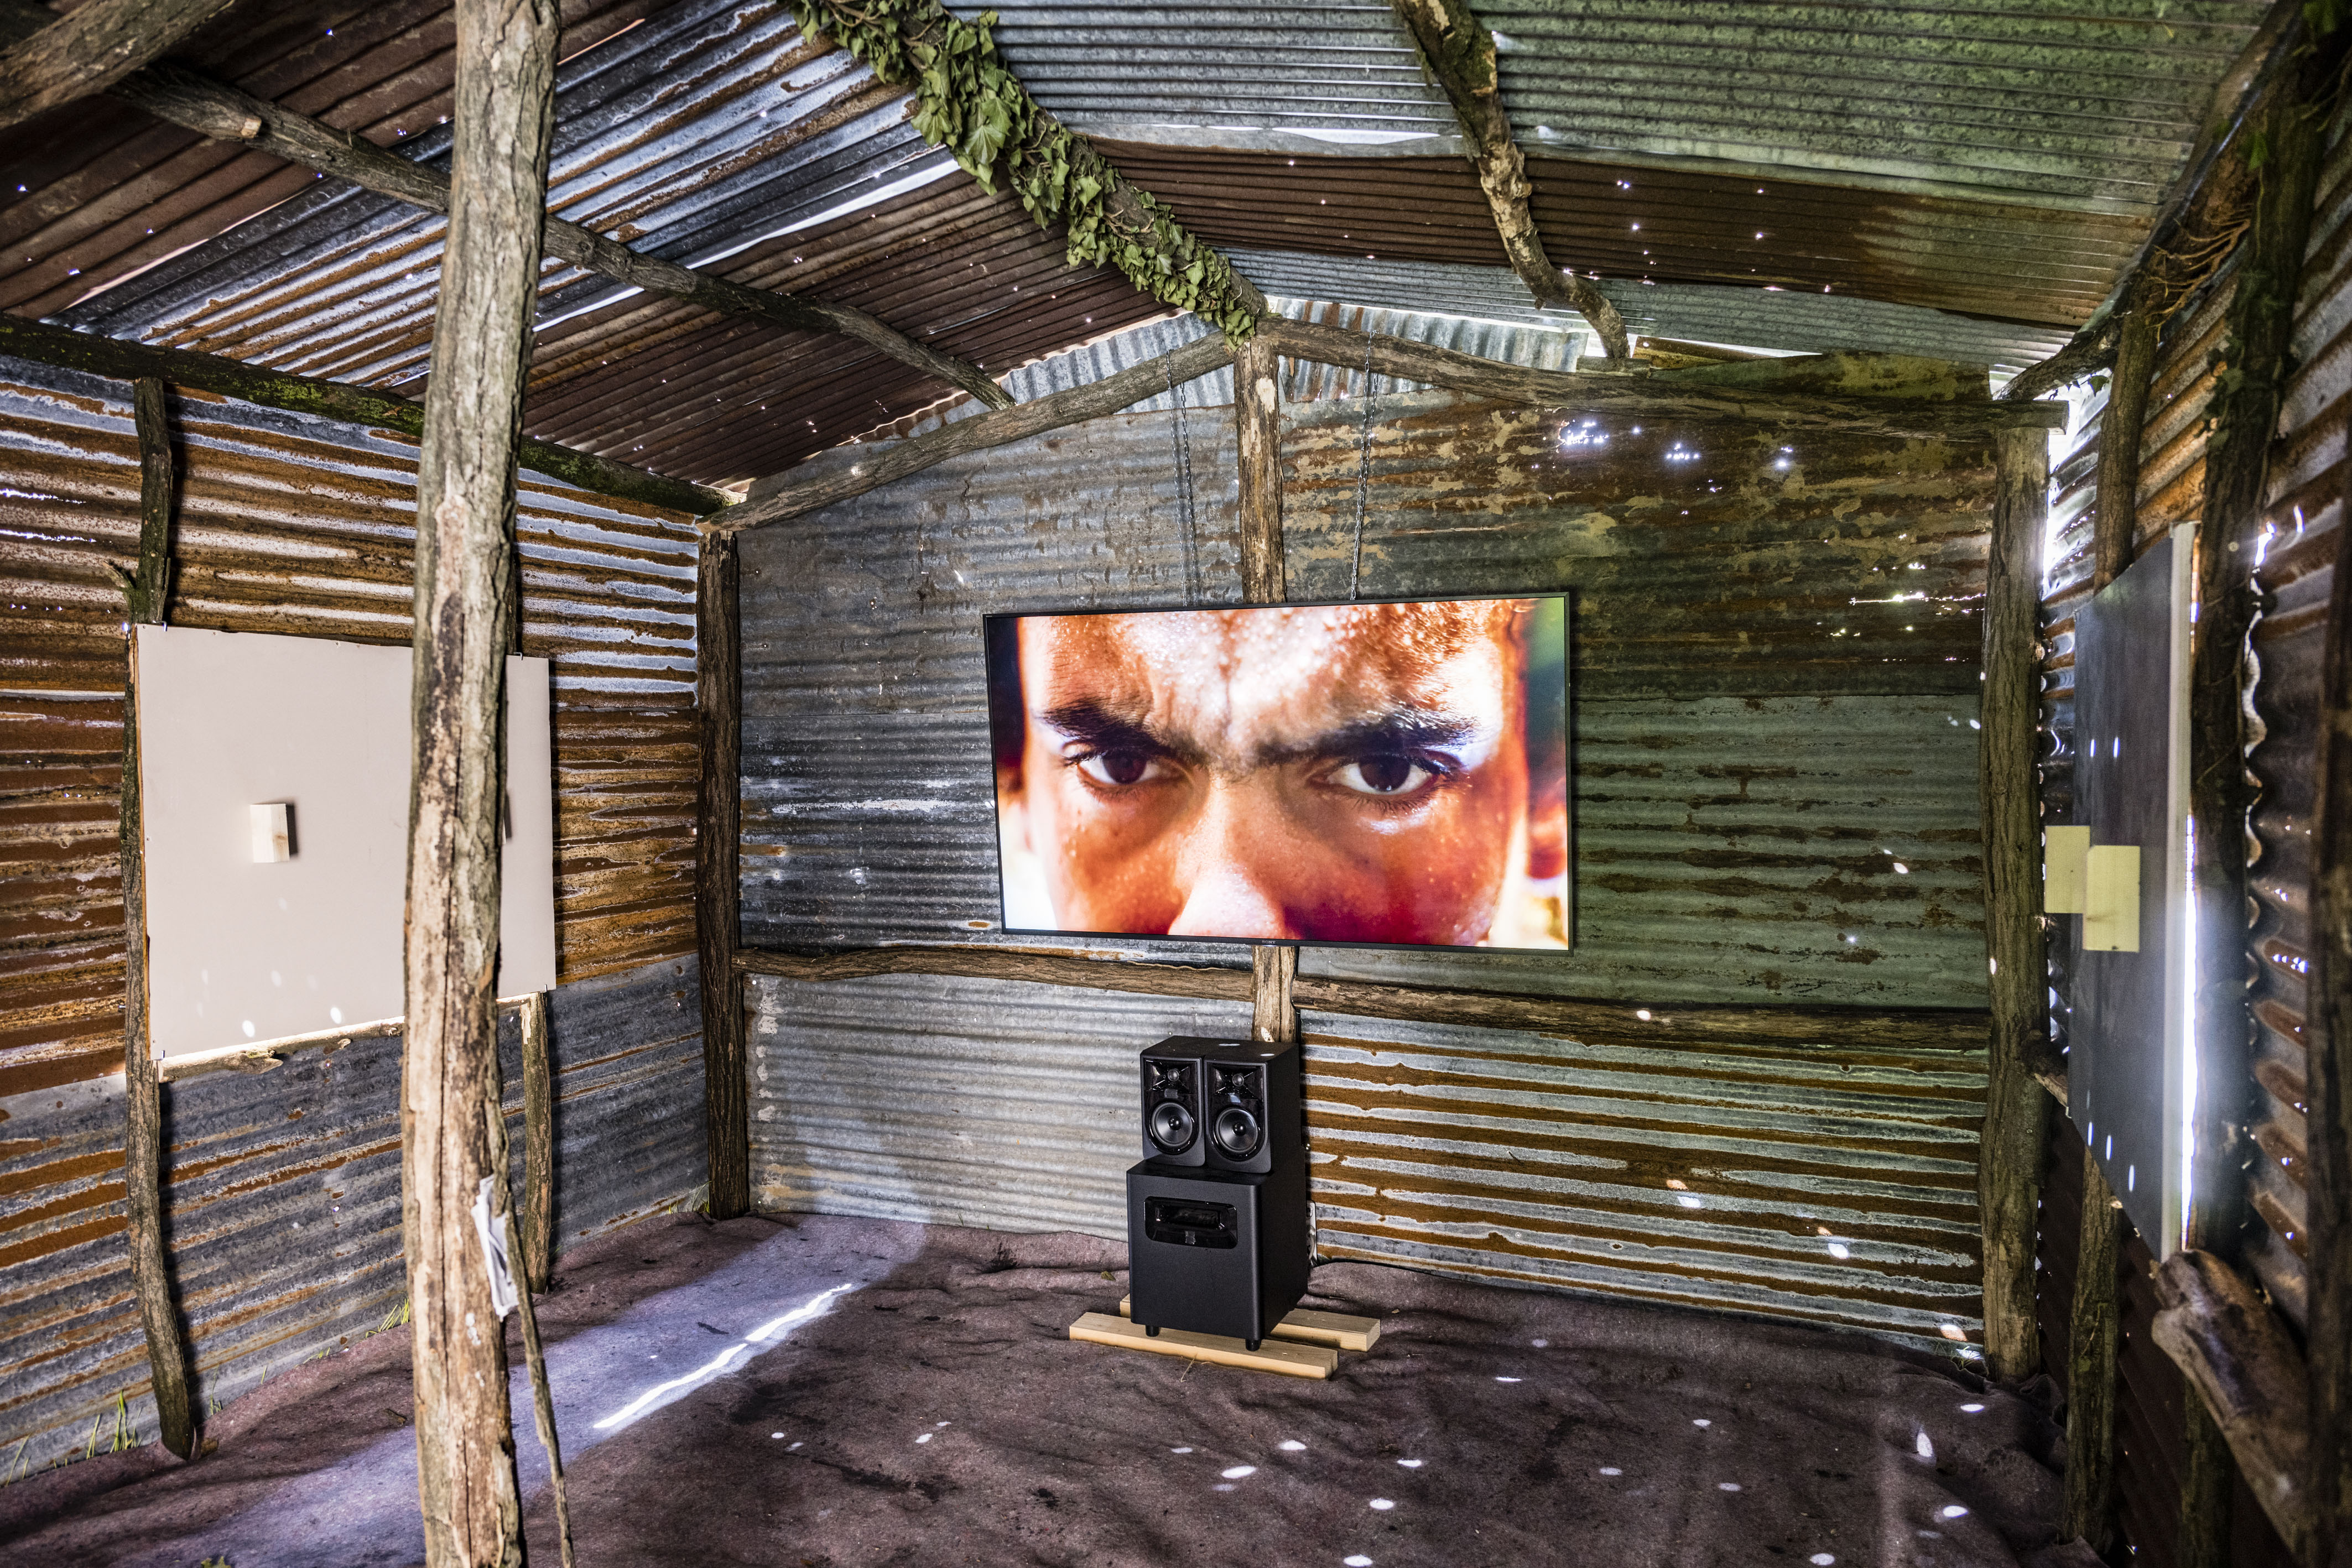 Richard Bell, No Tin Shack 2022, video, colour sound, 7:42 mins, looped, Installation view, ESPRESSIONI CON FRAZIONI, Castello di Rivoli, Turn. Photo by Andrea Guermani.